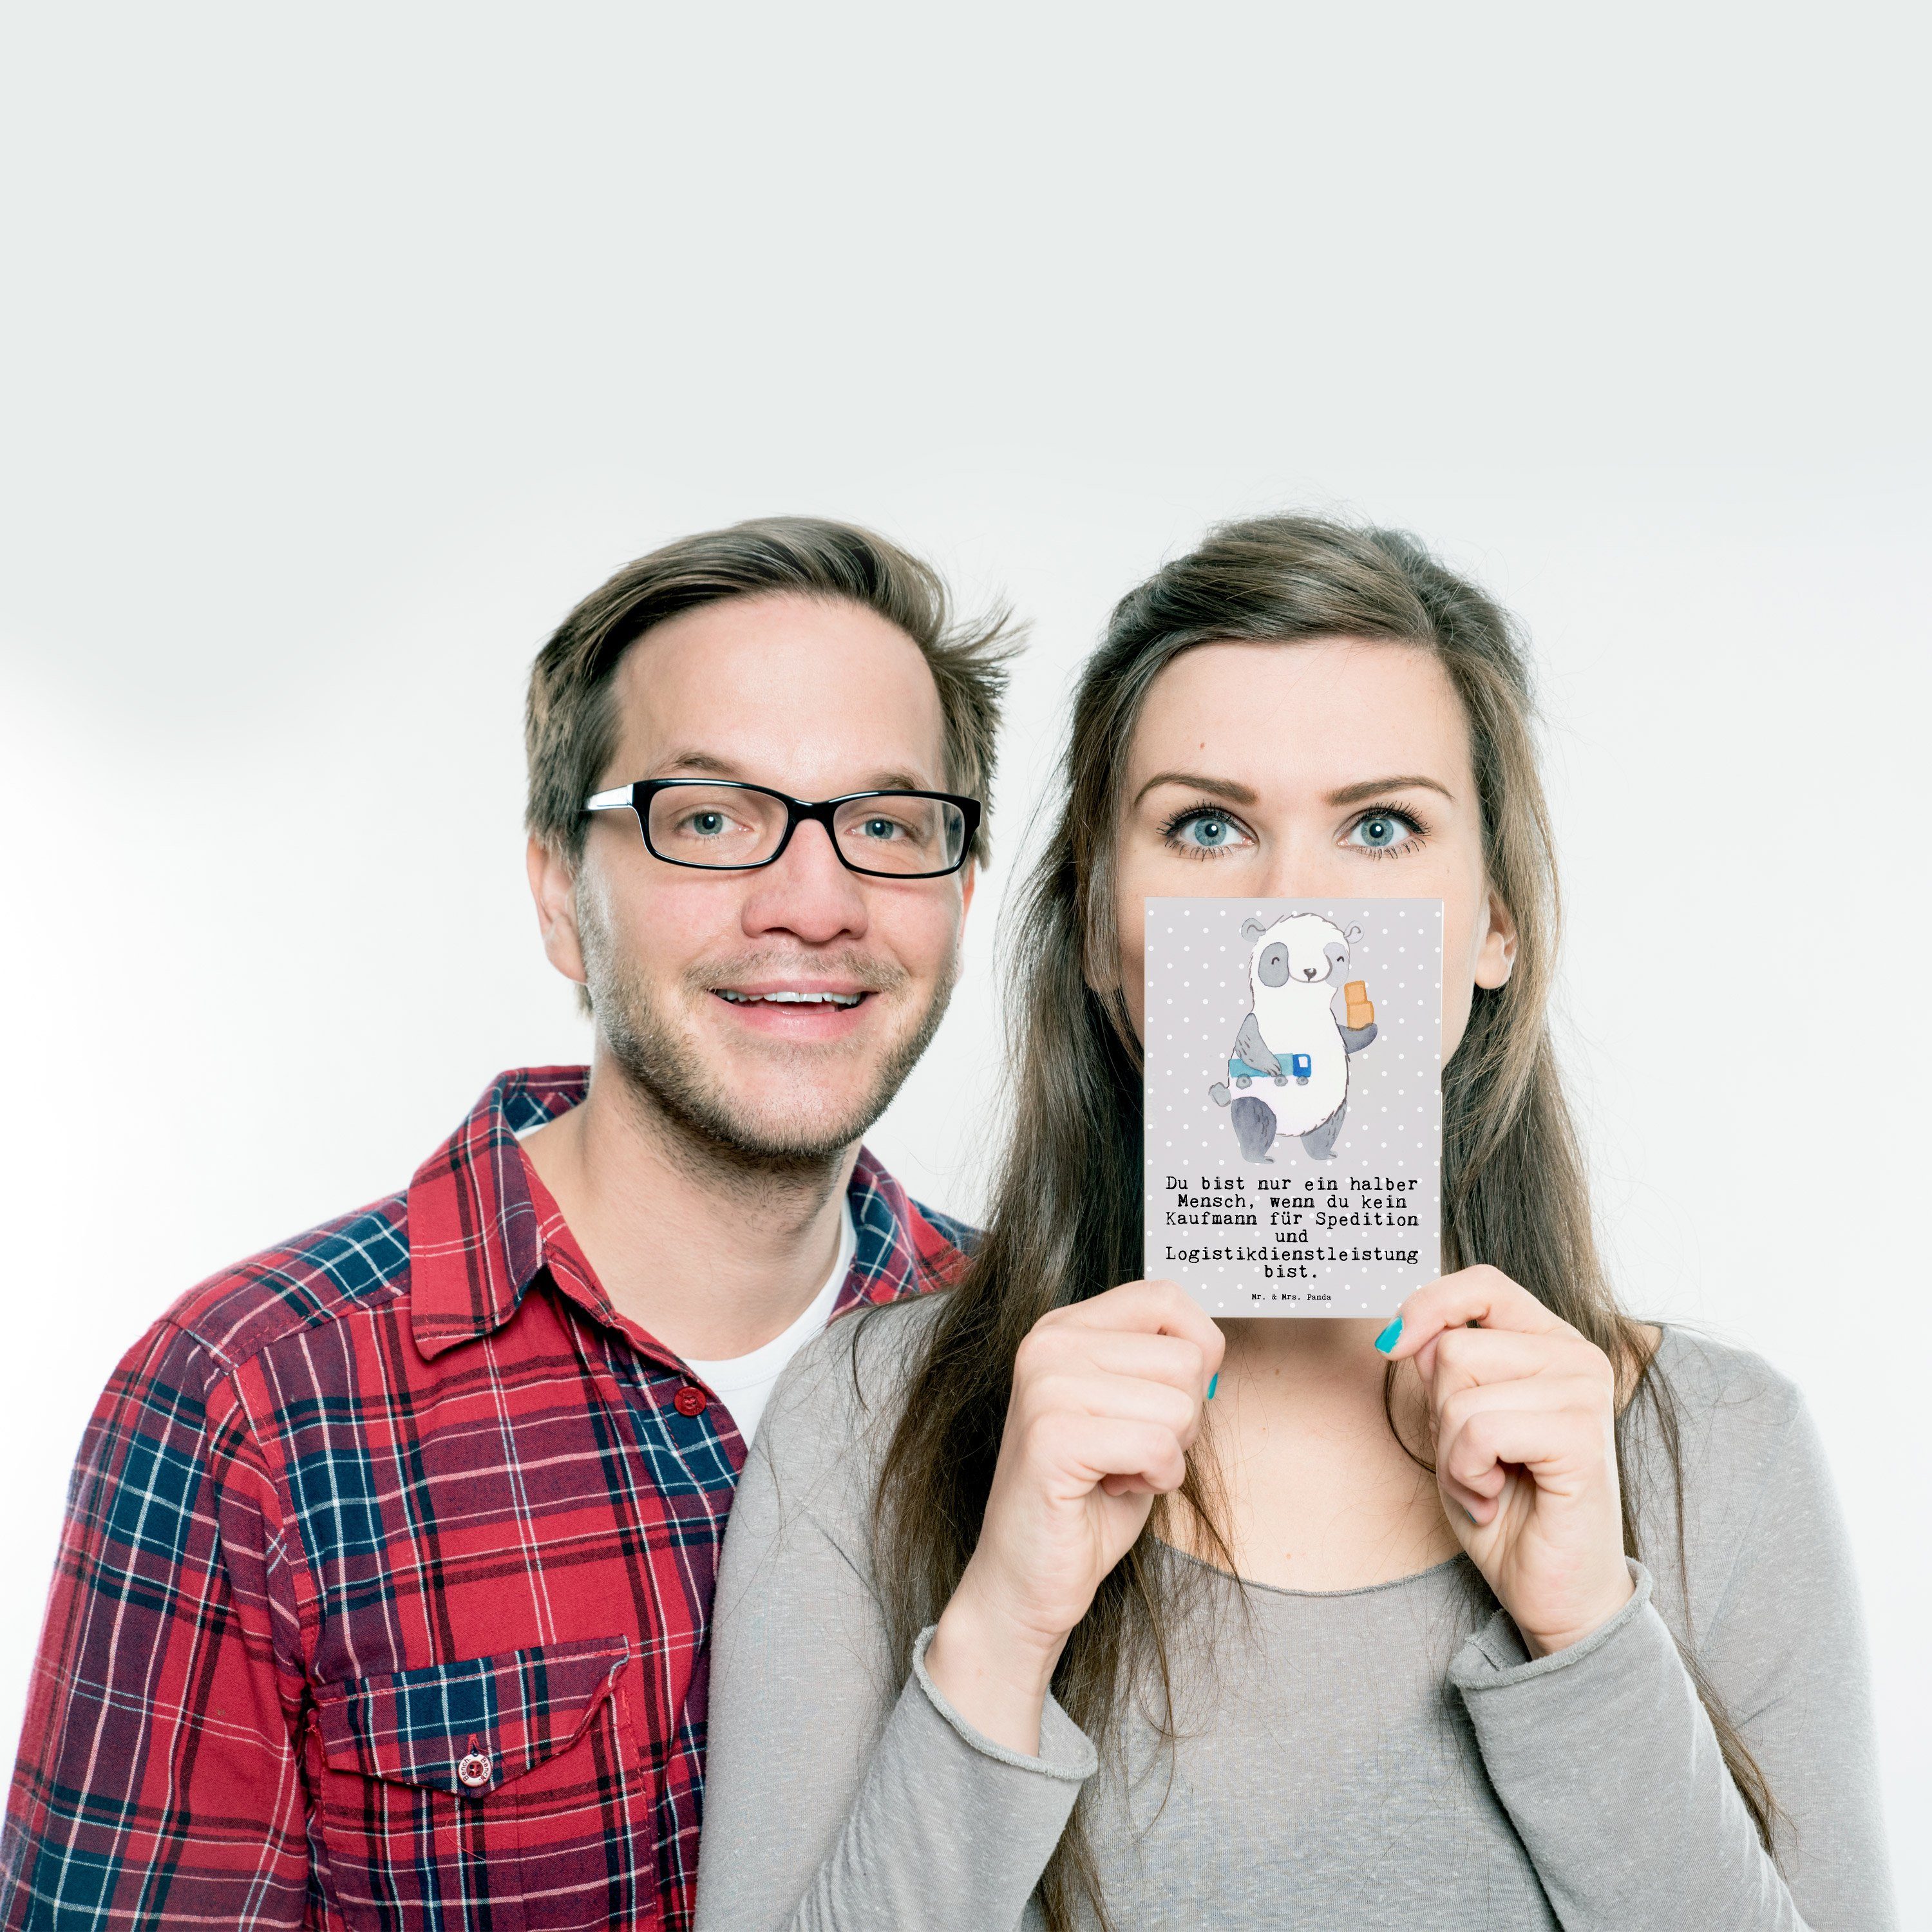 Mr. & Mrs. Panda Postkarte und mit Logistikdienstleistung für Herz Grau Pas - Pastell Kaufmann Grau Spedition